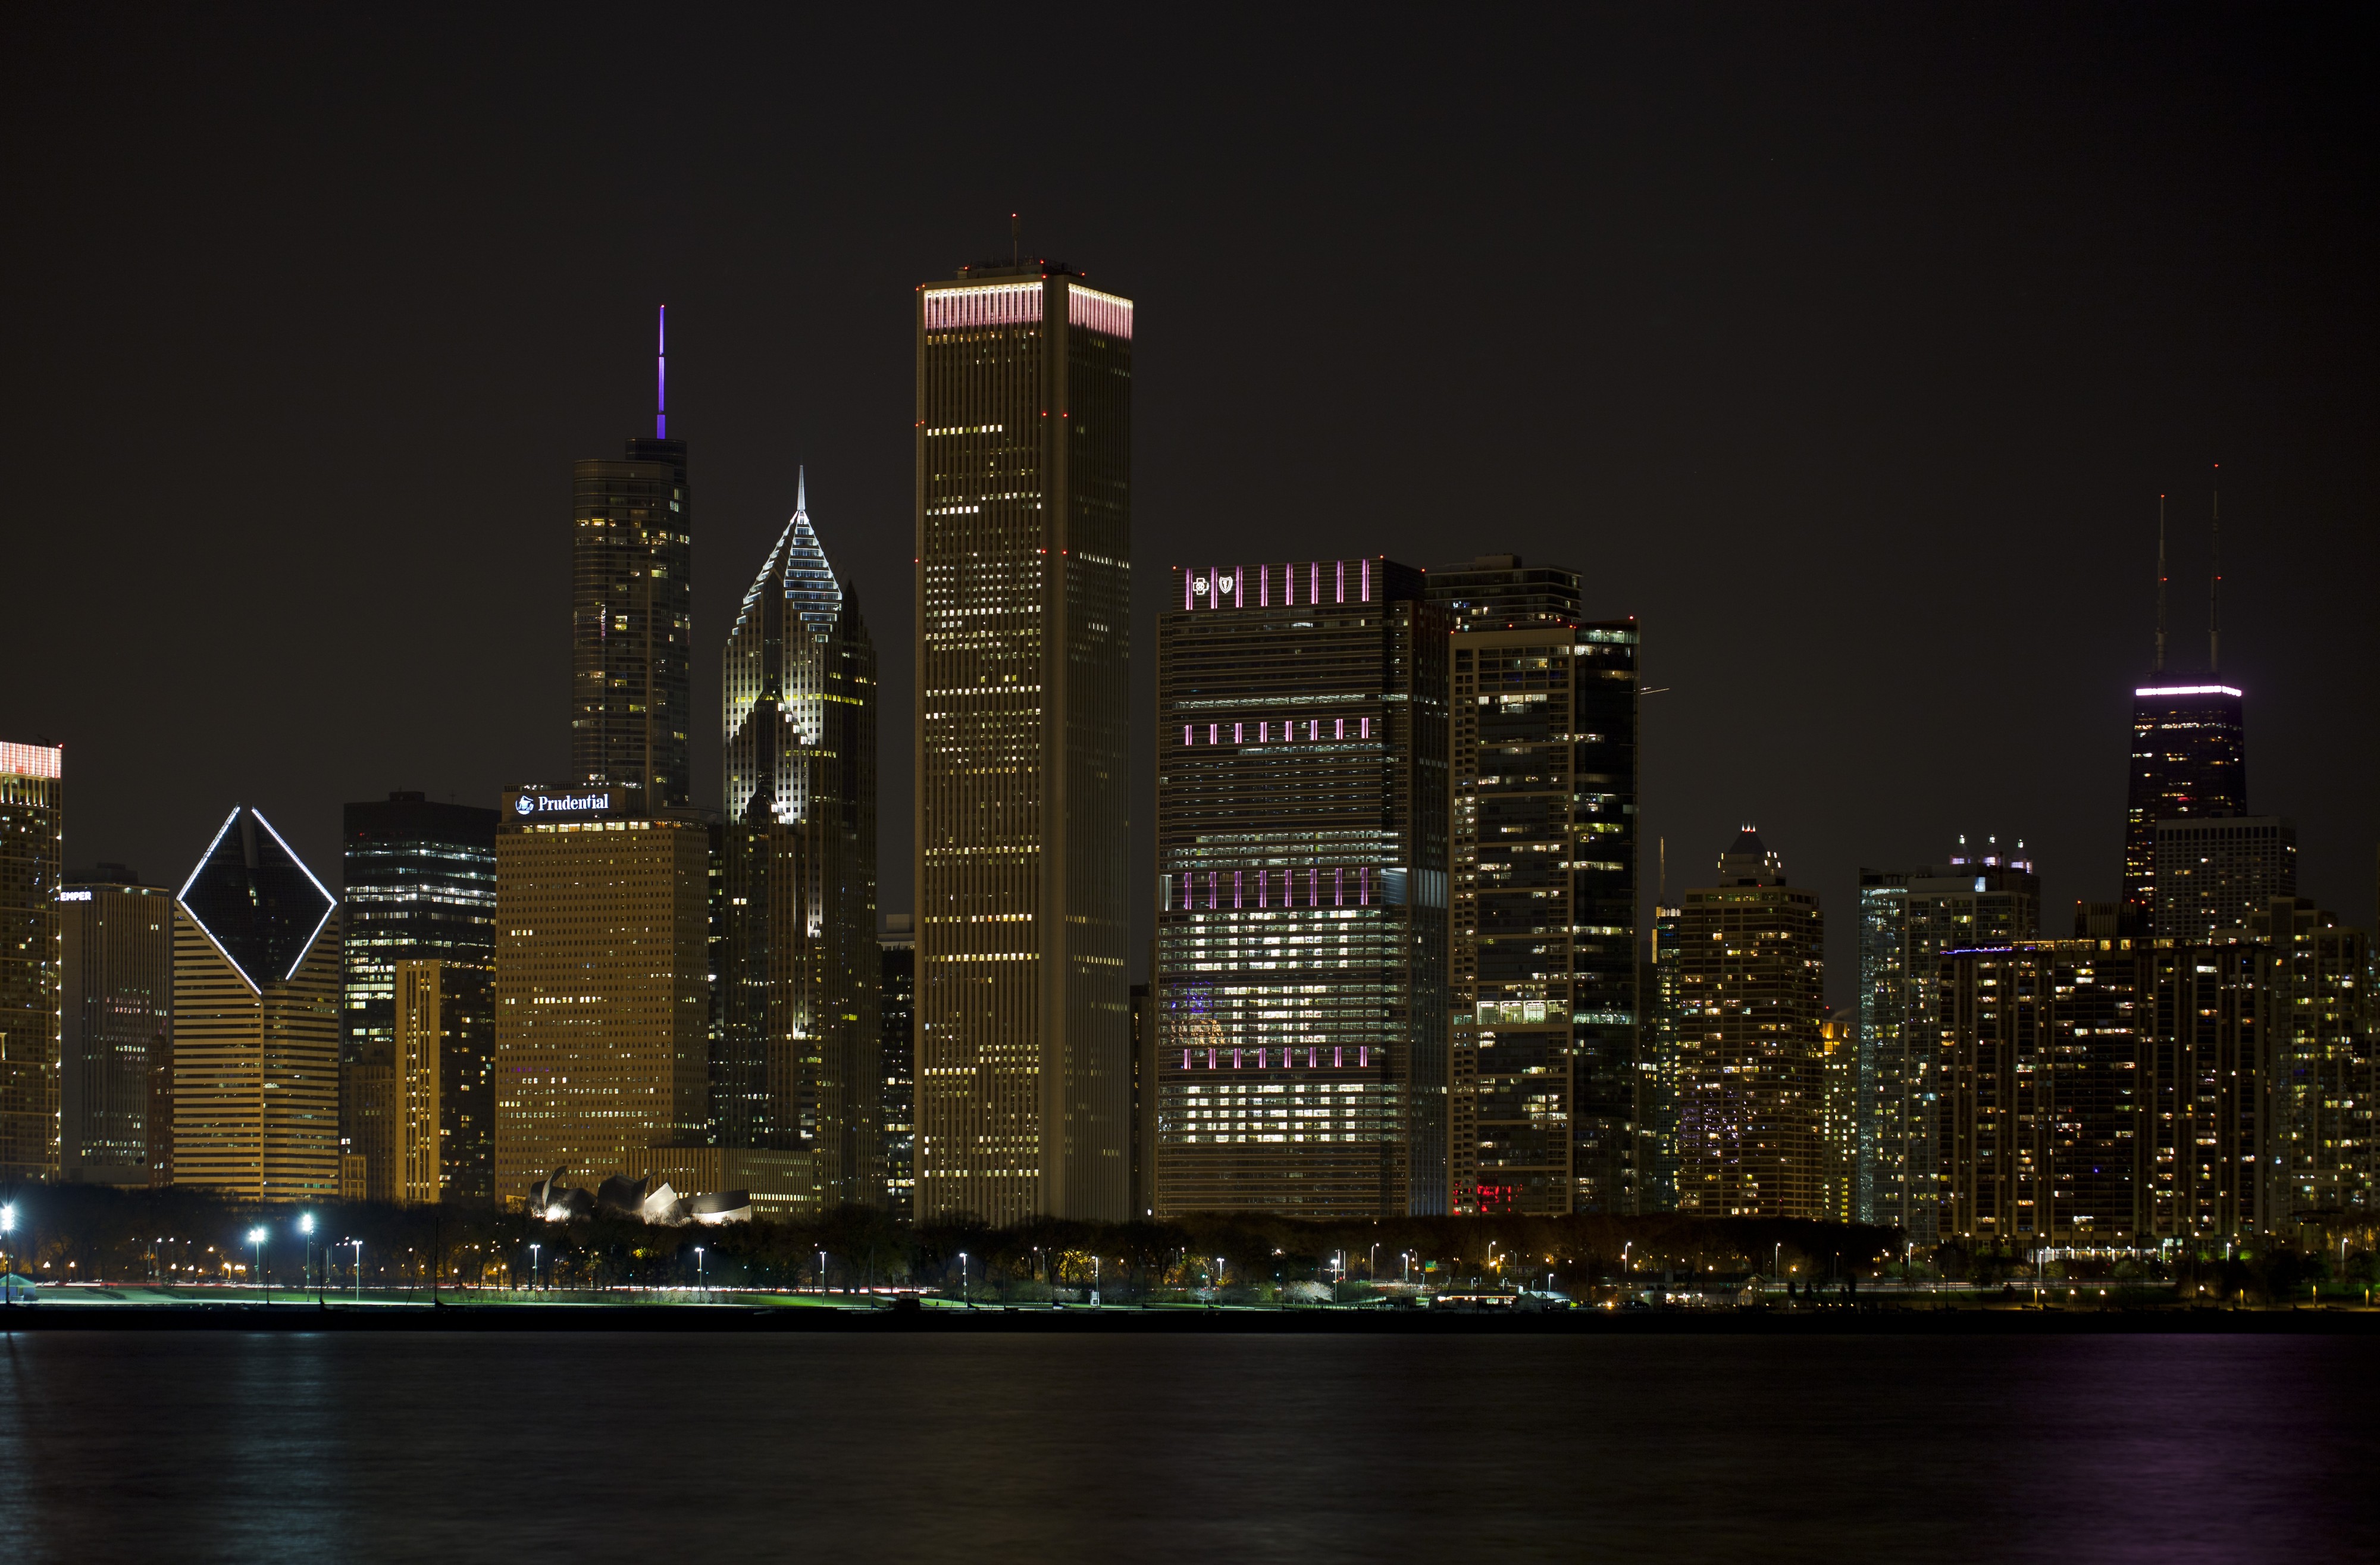 Vista del Skyline de Chicago desde el Planetario, Illinois, Estados Unidos, 2012-10-20, DD 15